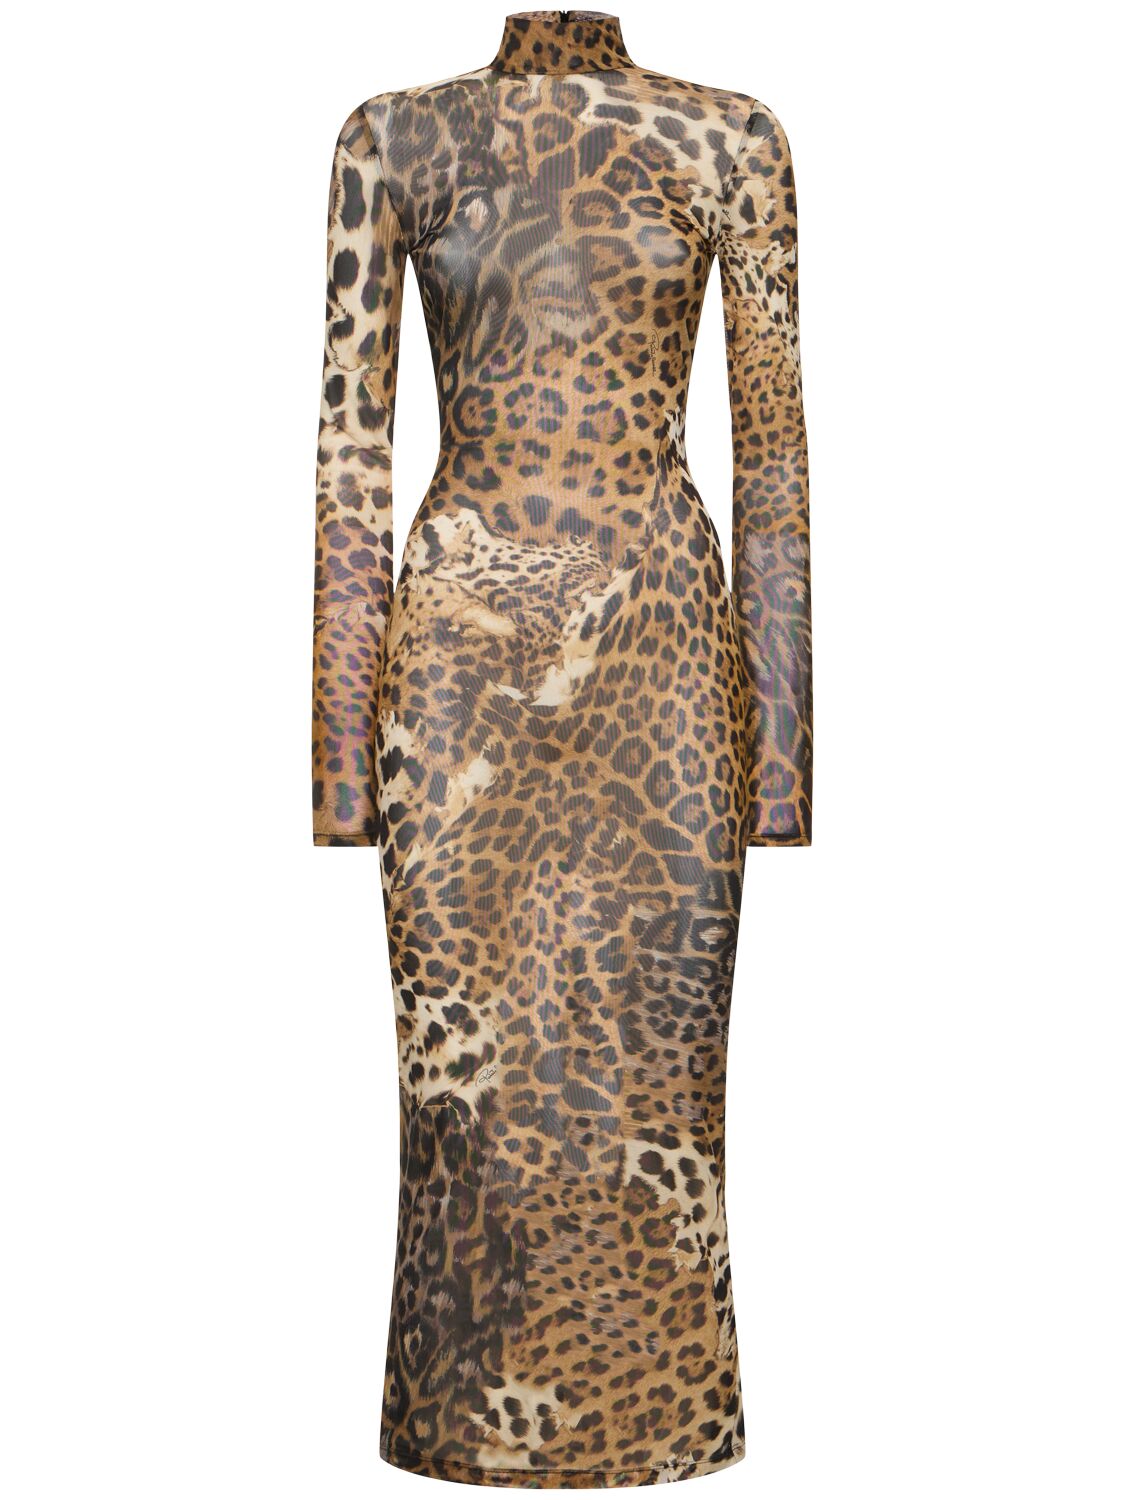 Roberto Cavalli Jaguar Printed Tulle Dress In Brown/multi